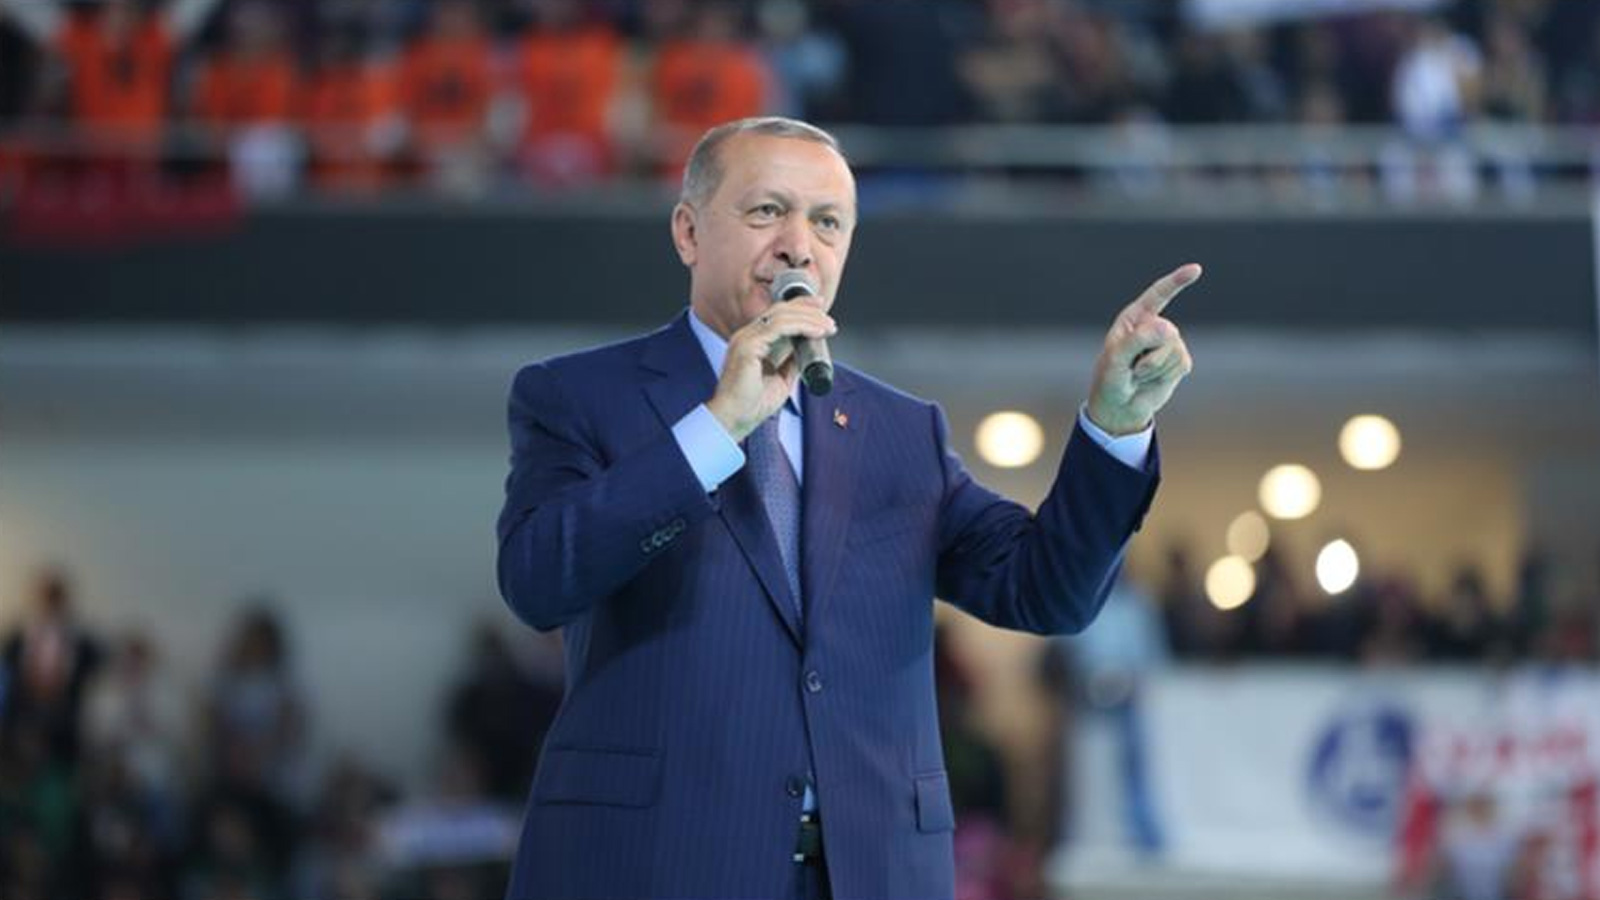 النجاحات التي حققها أردوغان في الاقتصاد هي نجاحات ضمن منظومة الاقتصاد العالمي نفسه.. وسيظل اقتصادا ناجحا بالأرقام ما دامت المنظومة نفسها مستمرة